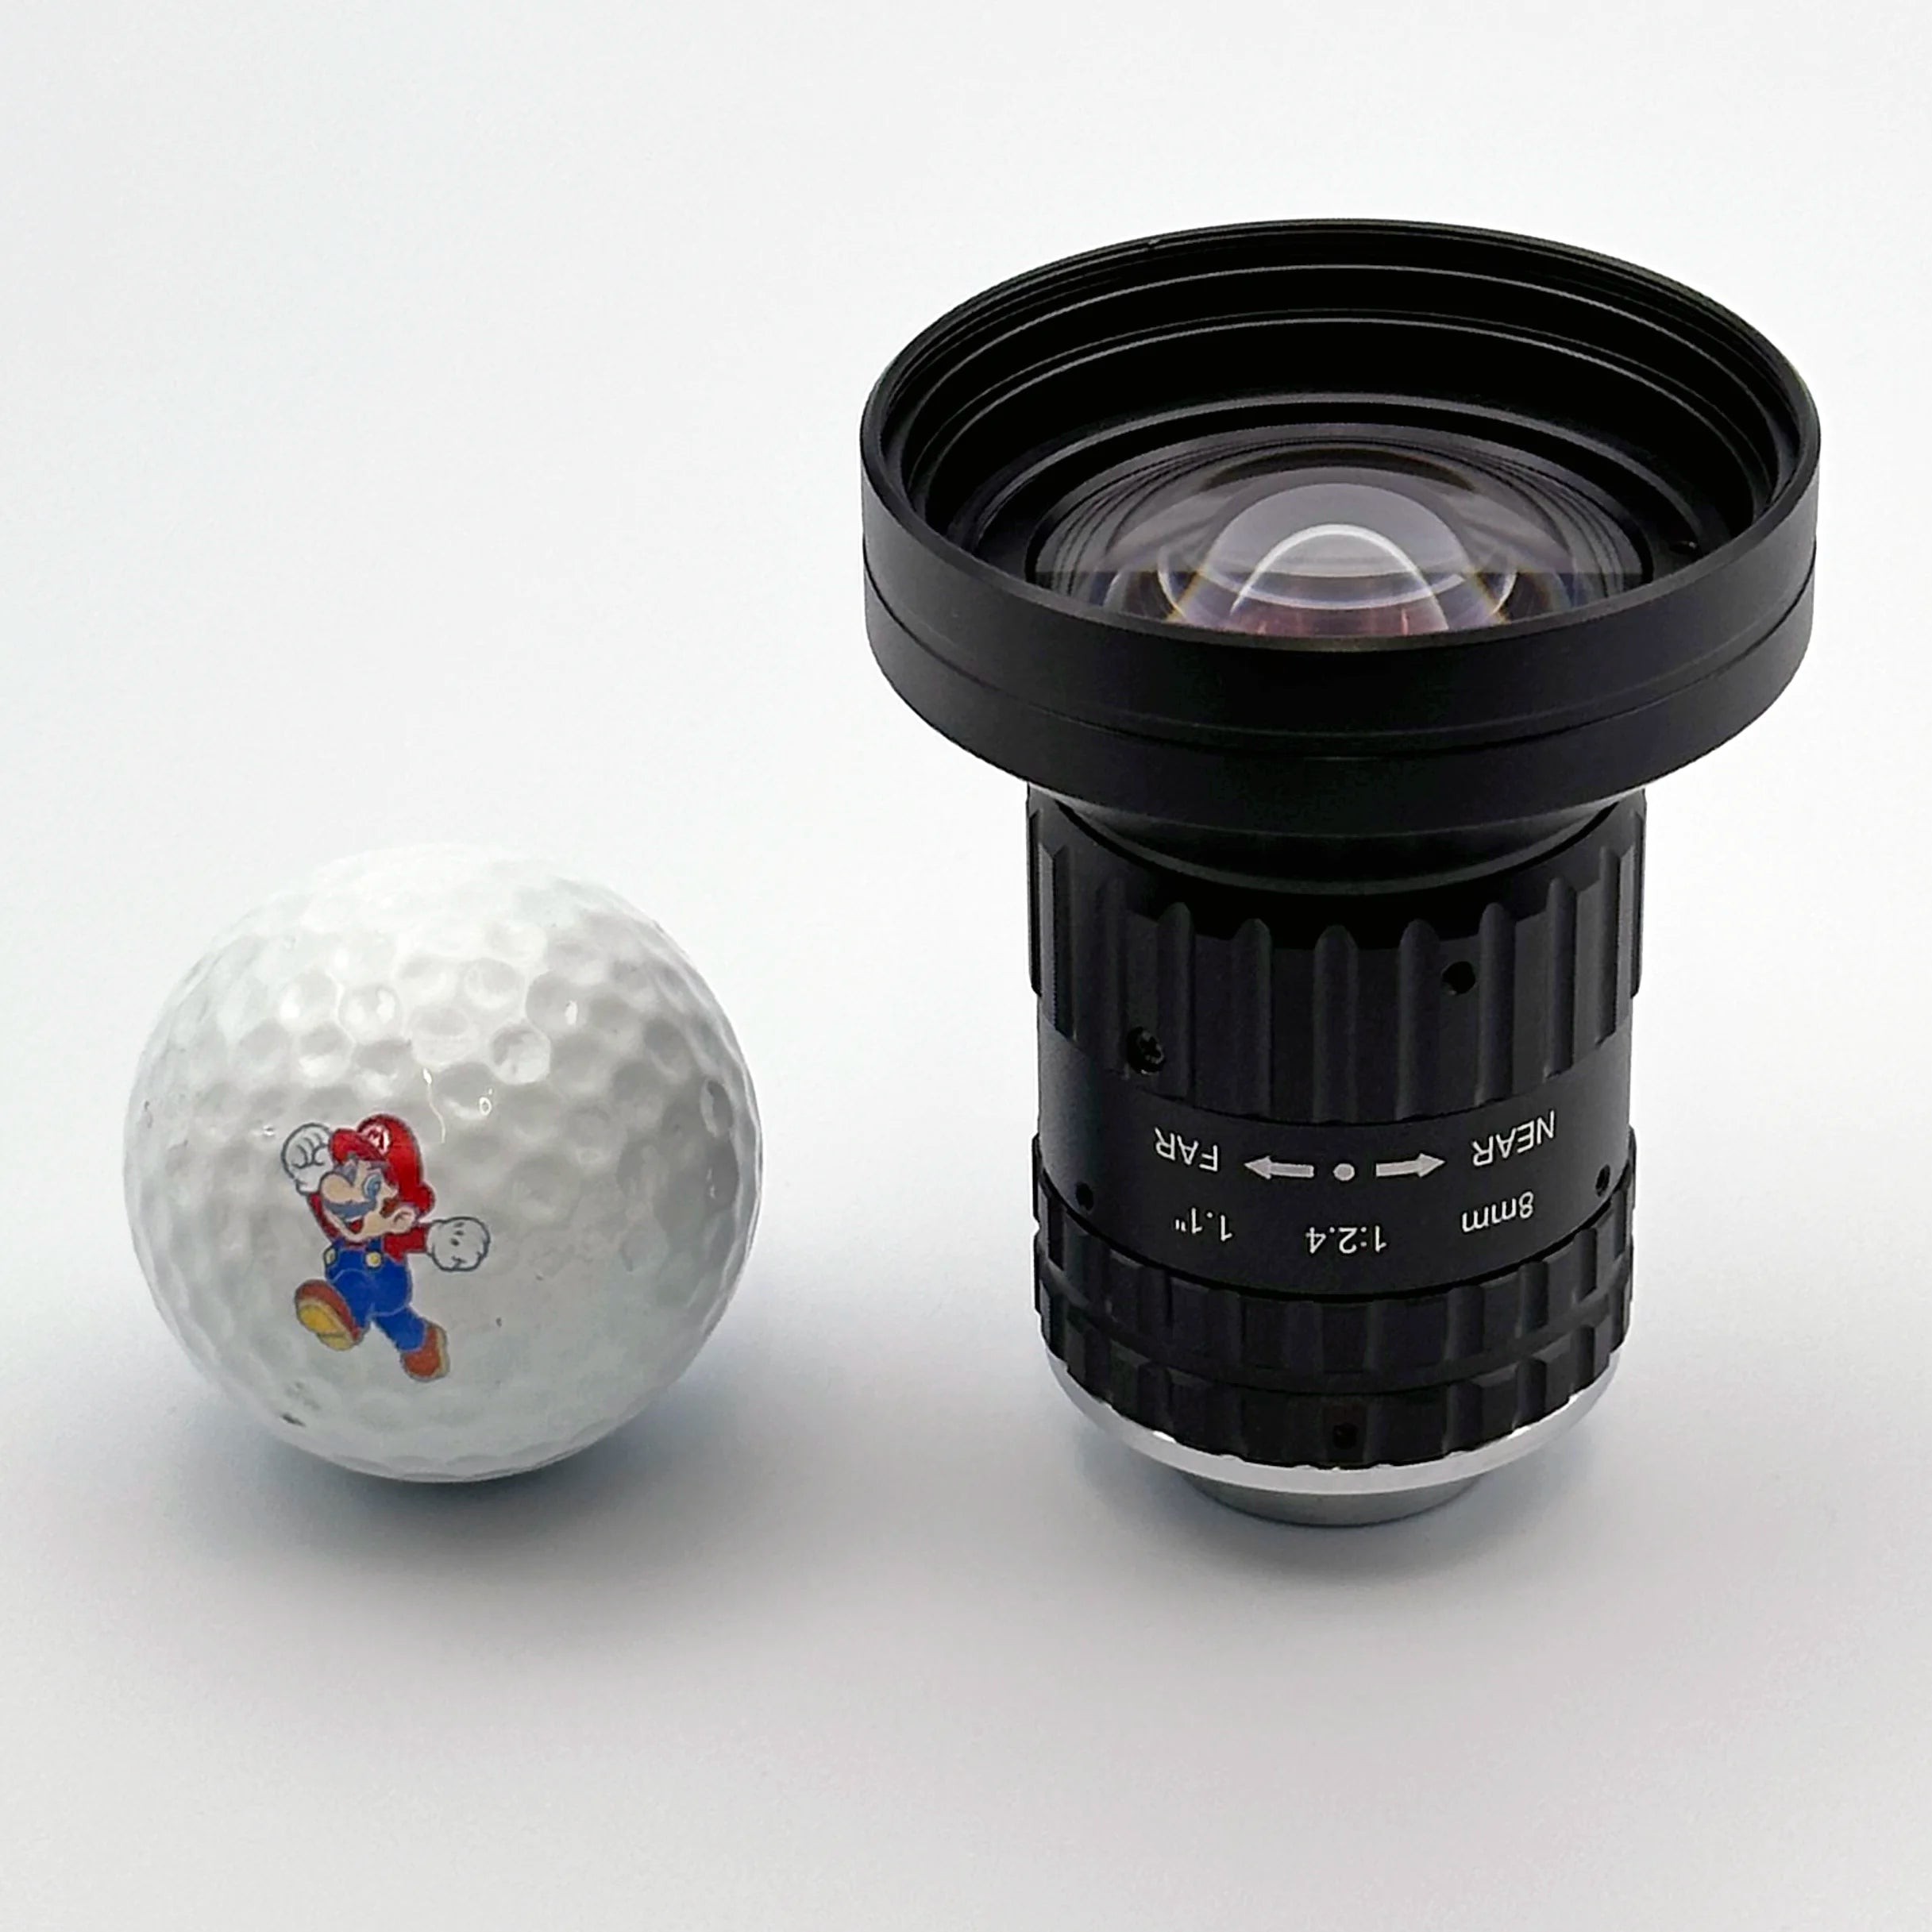 IMX253 8.5mm C-Mount Lens for FLIR Basler Allied Vision Computar